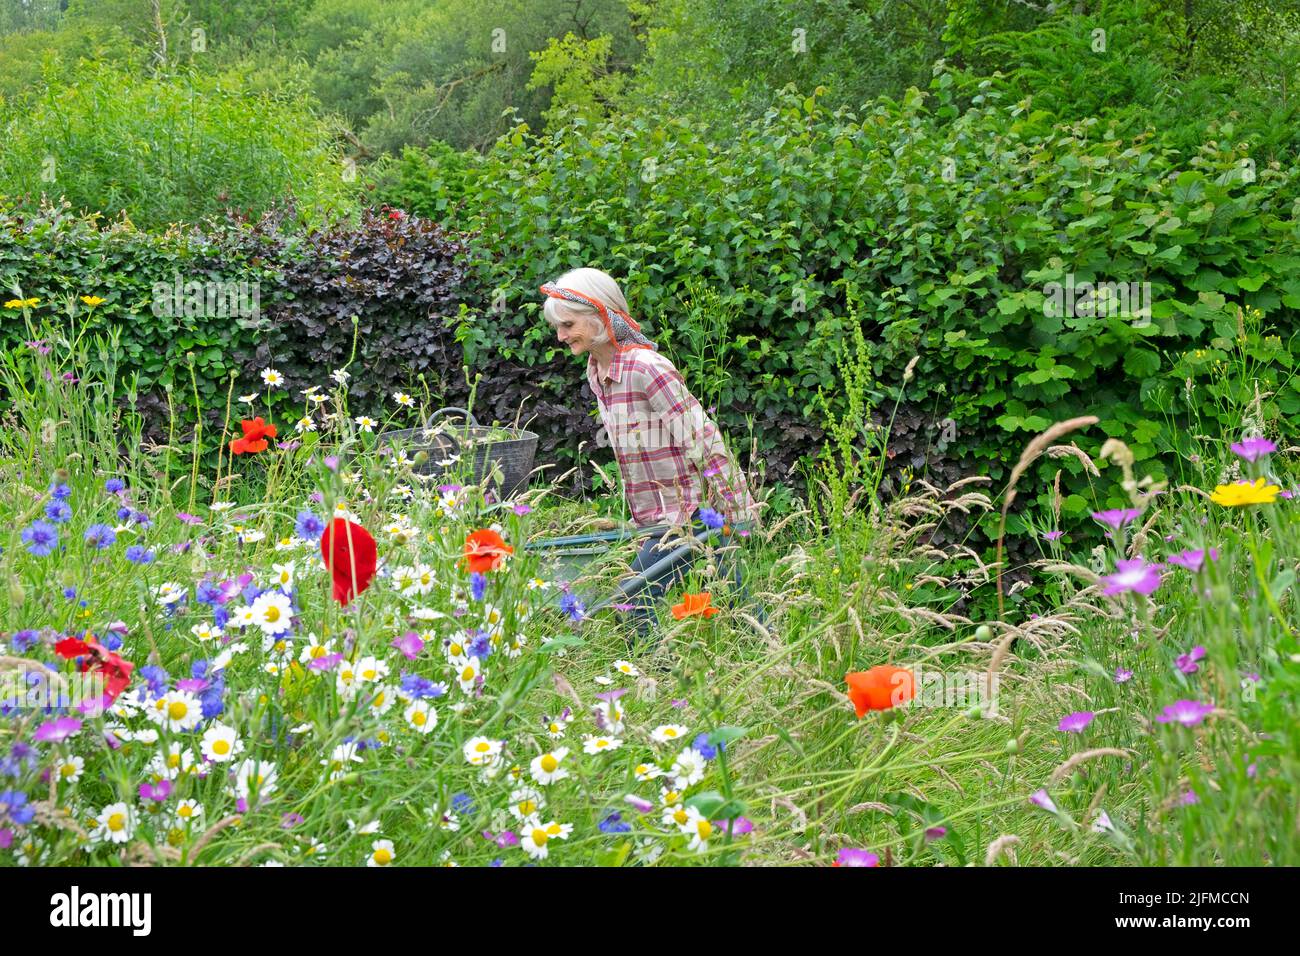 Femme âgée jardinant poussant brouette et prairie de fleurs sauvages en fleurs rouges coquelicots, pâquerettes, cornflowers en juillet jardin pays de Galles Royaume-Uni KATHY DEWITT Banque D'Images